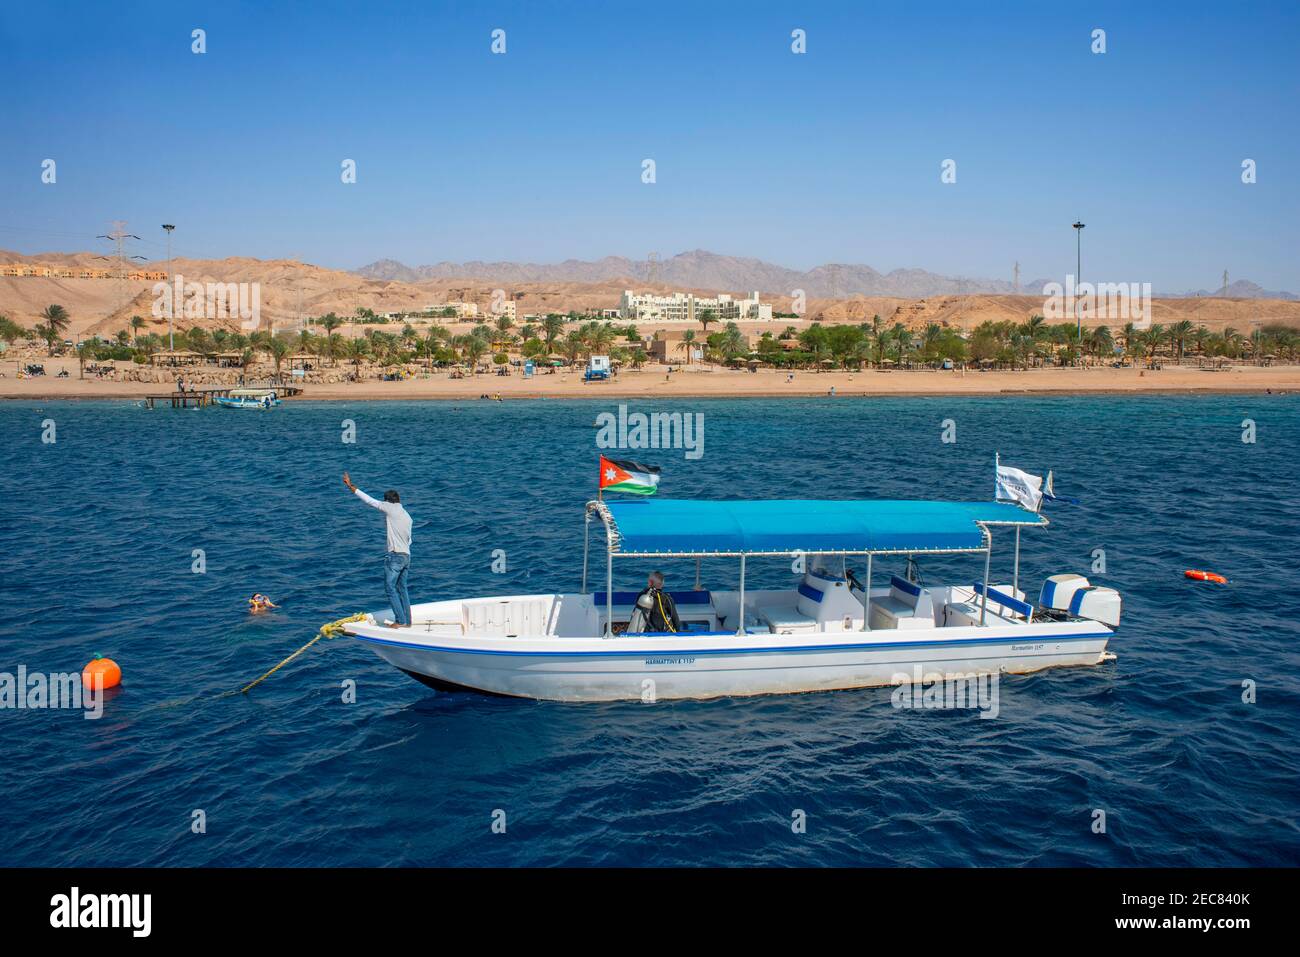 Touristen an Bord eines Tauchbootes kühlen sich im Wasser des Golfs von Aqaba in Jordanien ab. Aqaba hat ausgezeichnete Tauch- und Schnorchelriffe. Stockfoto